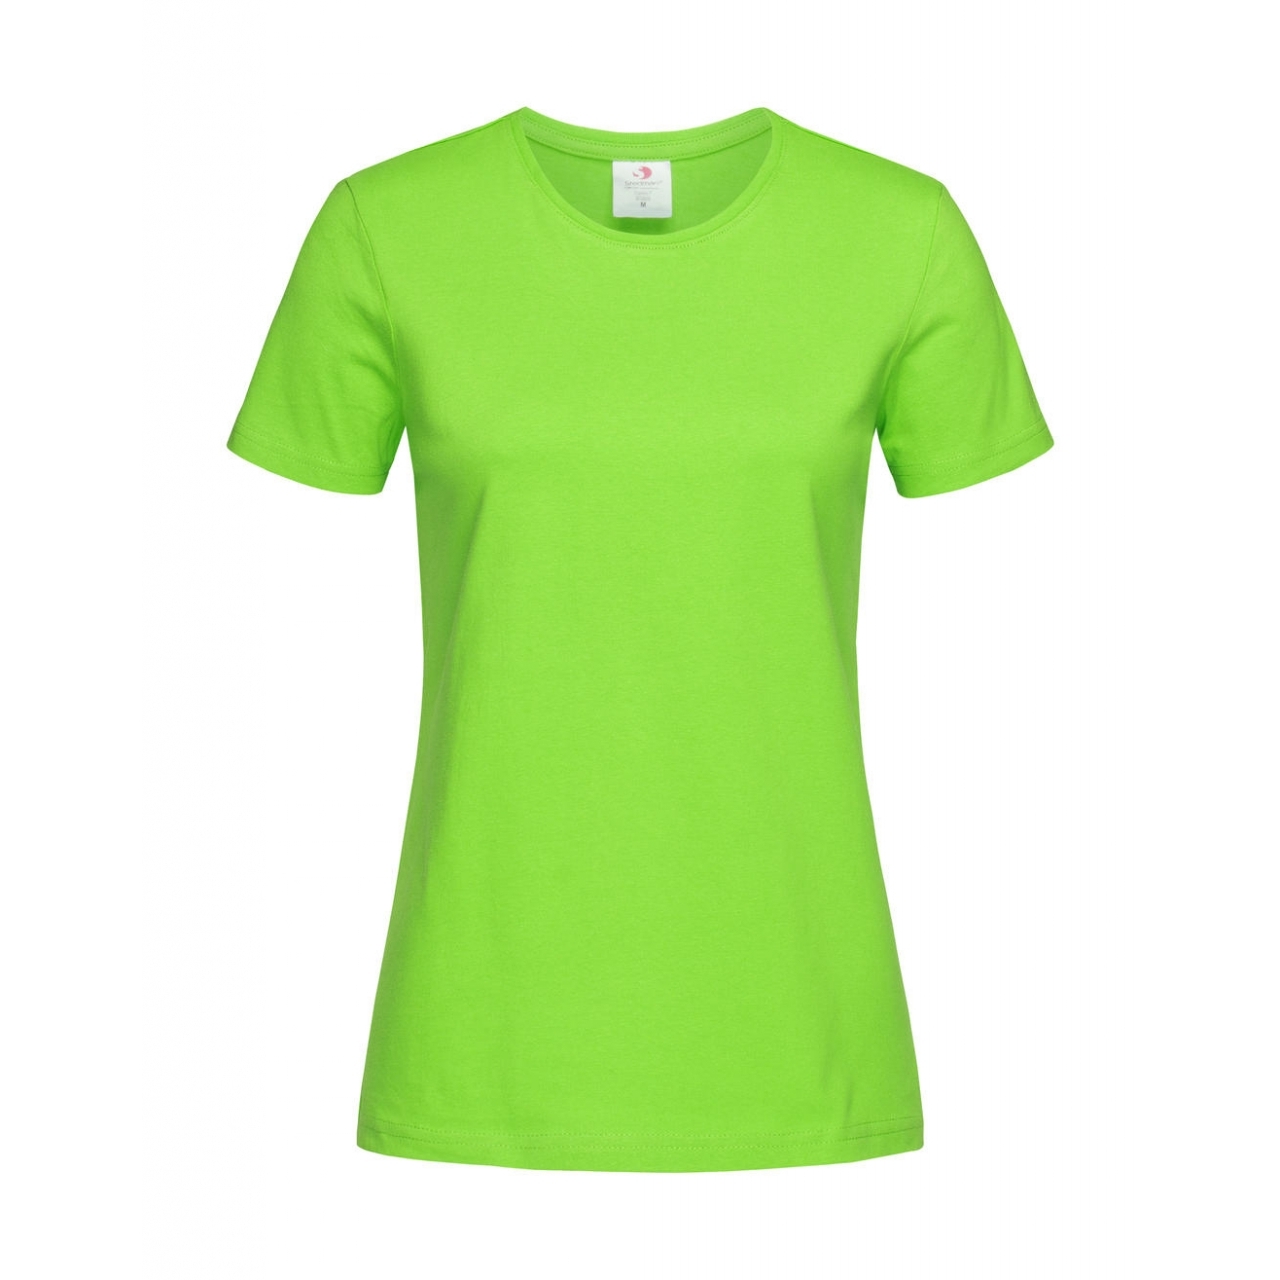 Tričko dámské Stedman Fitted s kulatým výstřihem - světle zelené, XXL